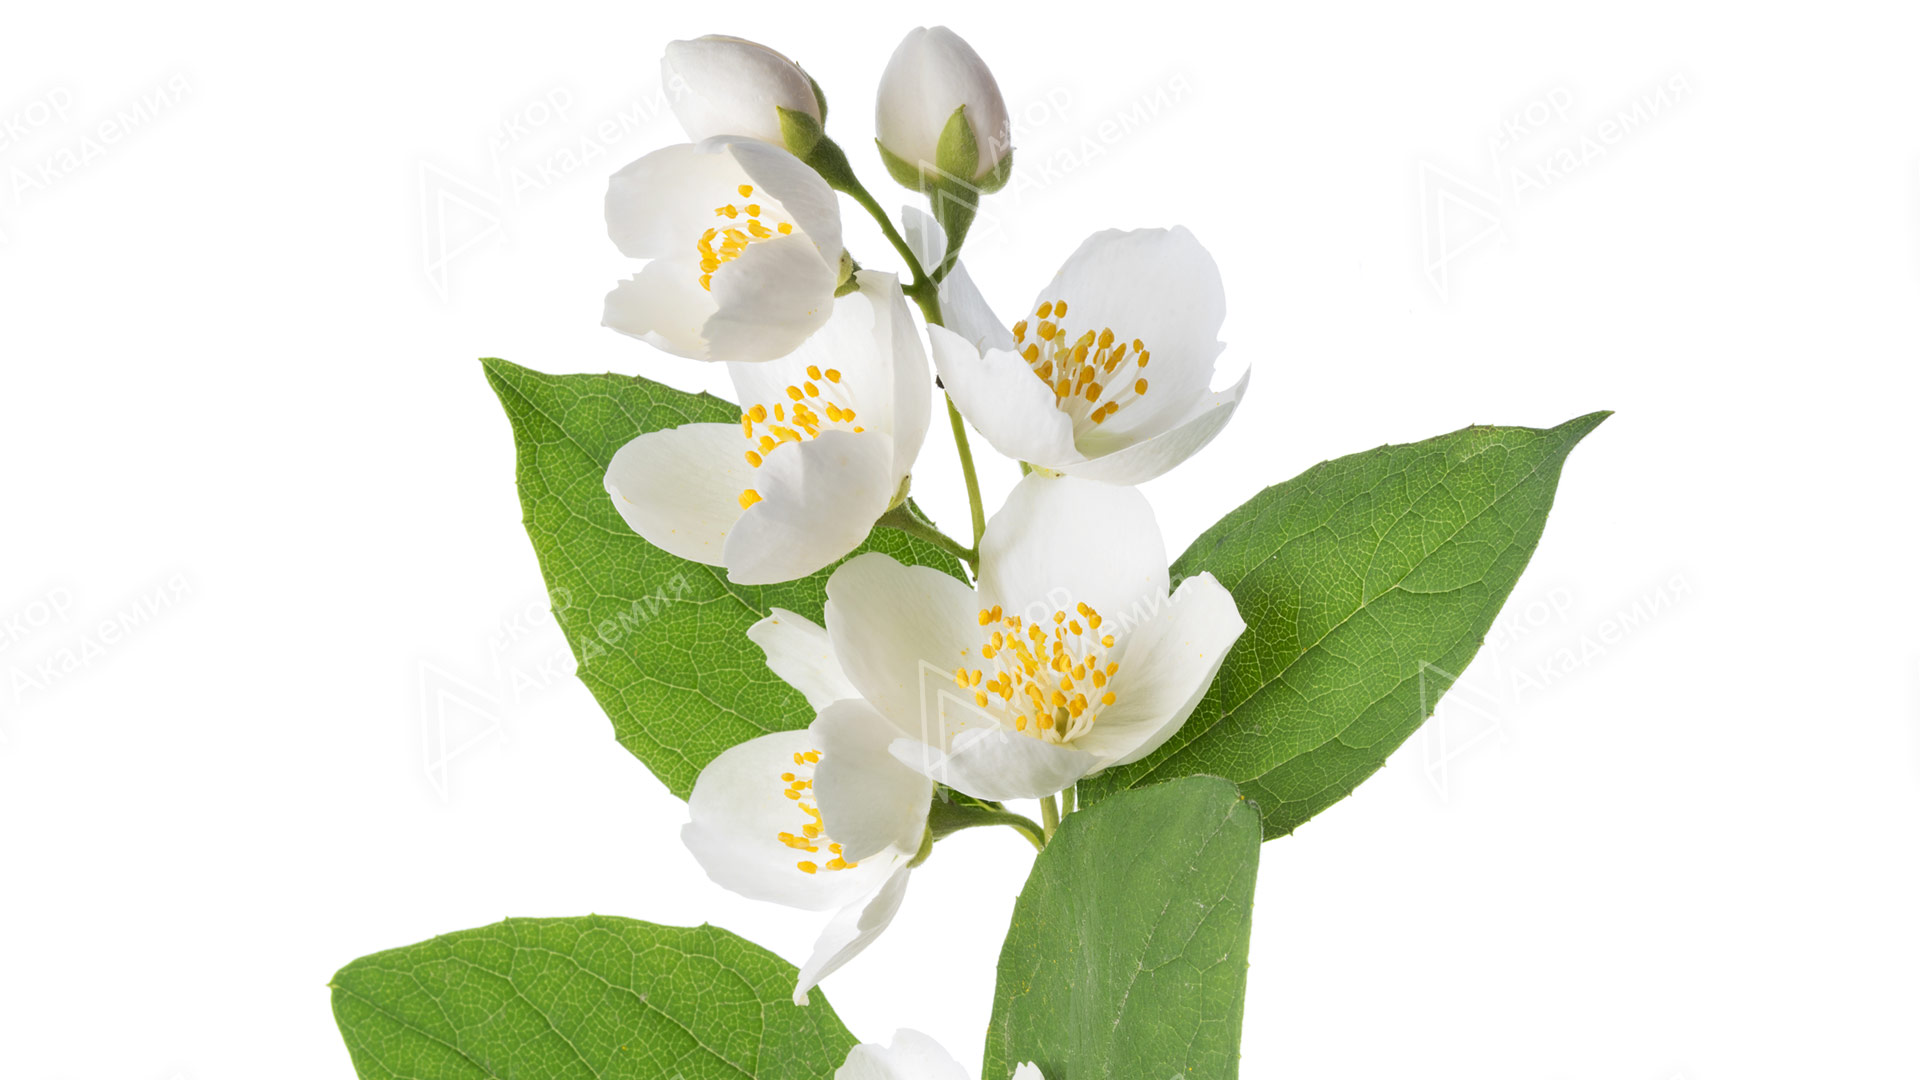 Жасмин полиантум (Jasminum polyanthum)